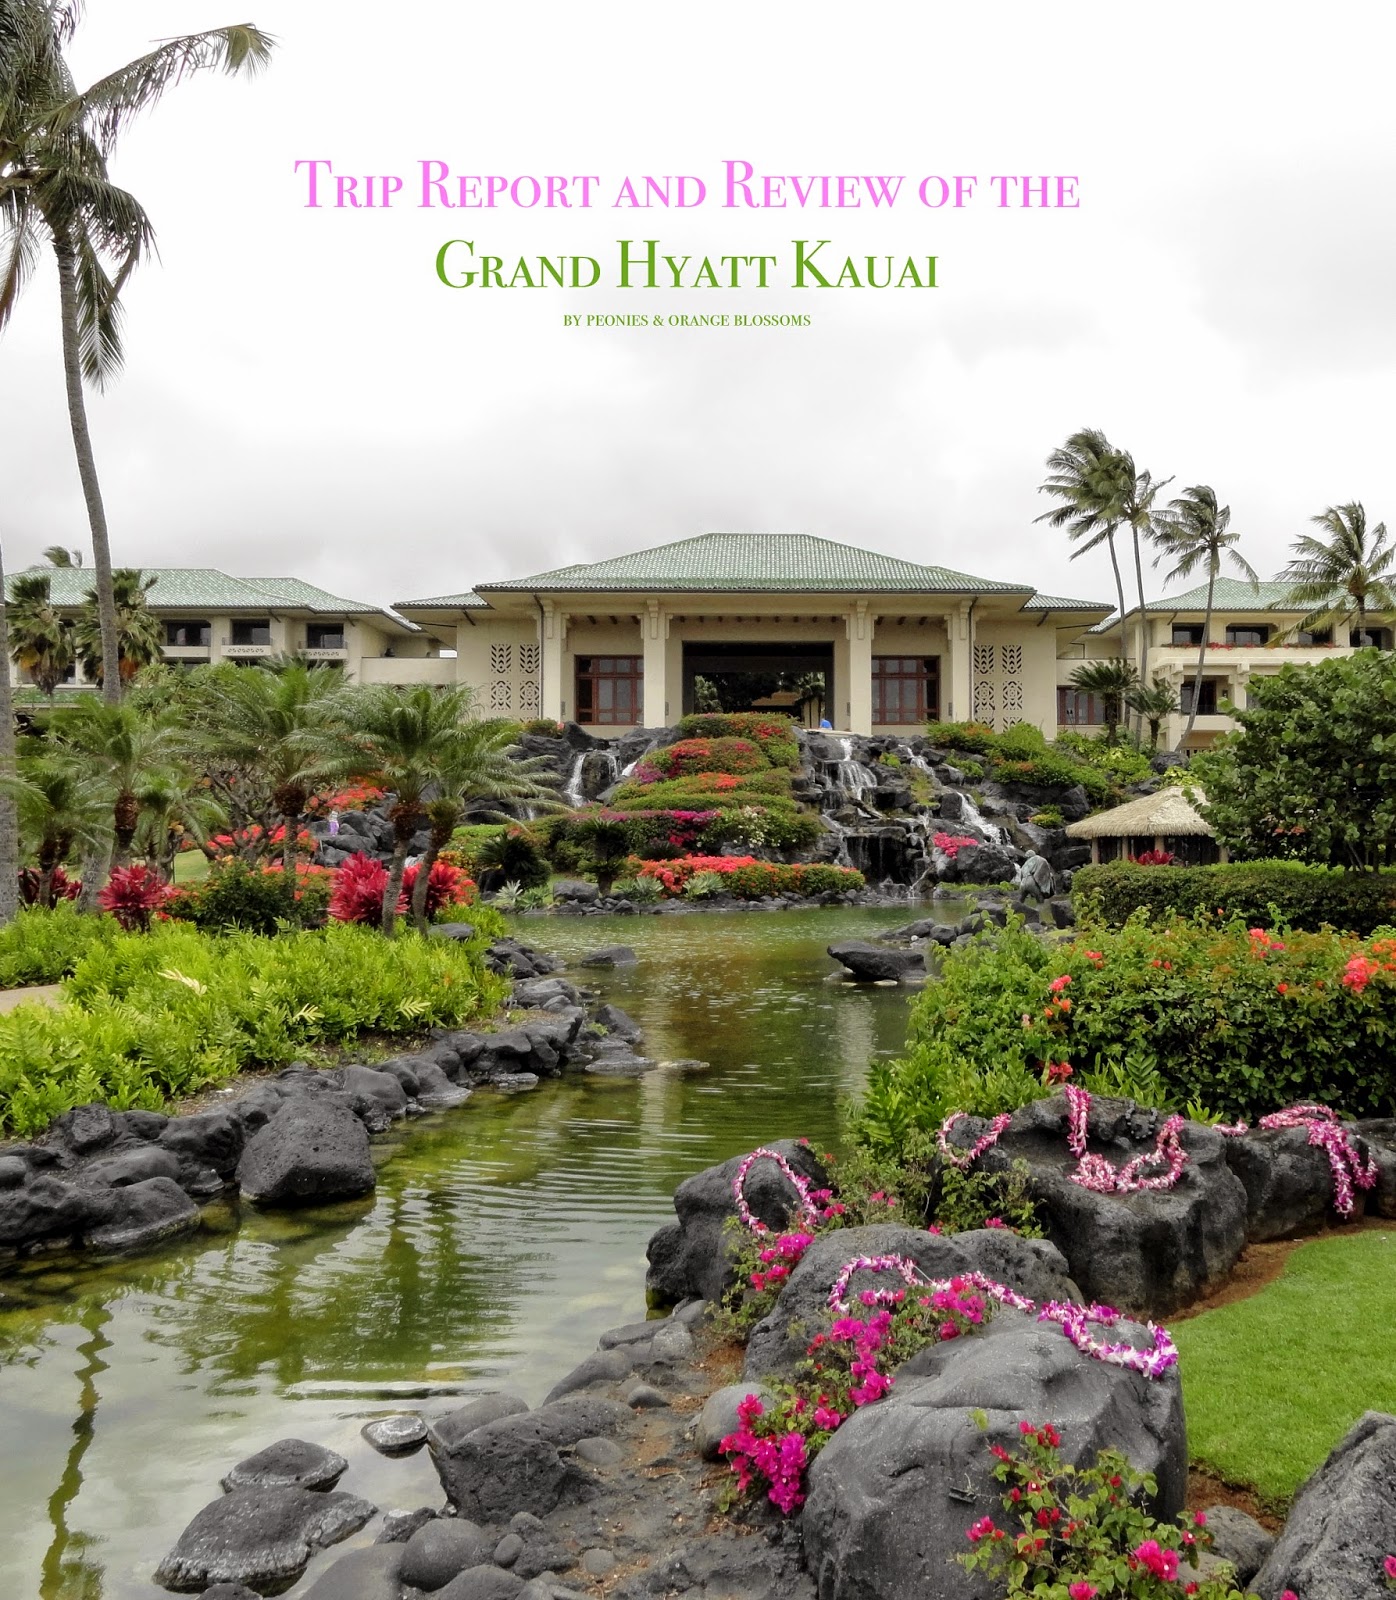 Grand Hyatt Kauai - Trip report and review